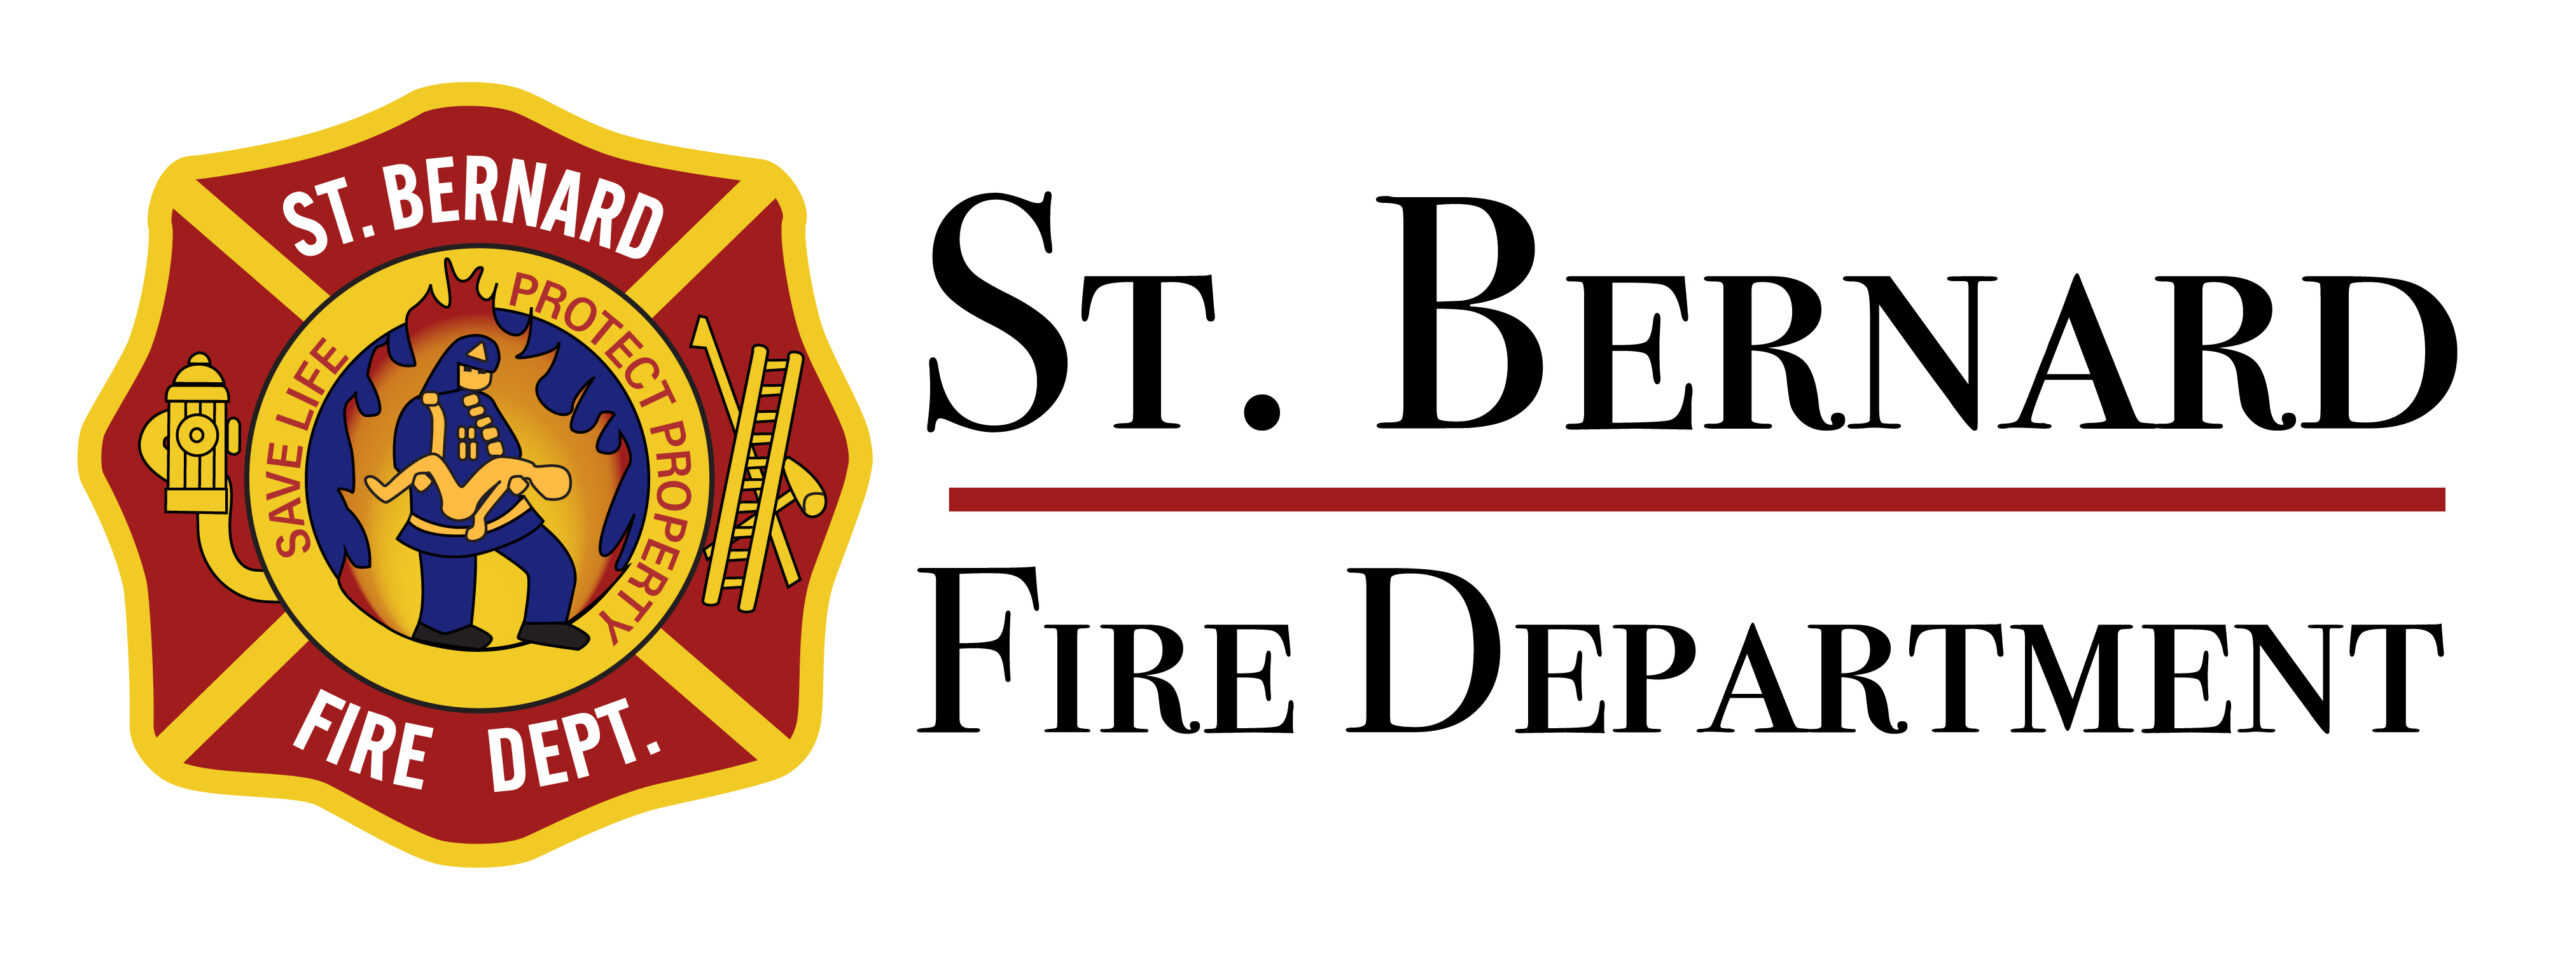 St. Bernard Fire Department Logo